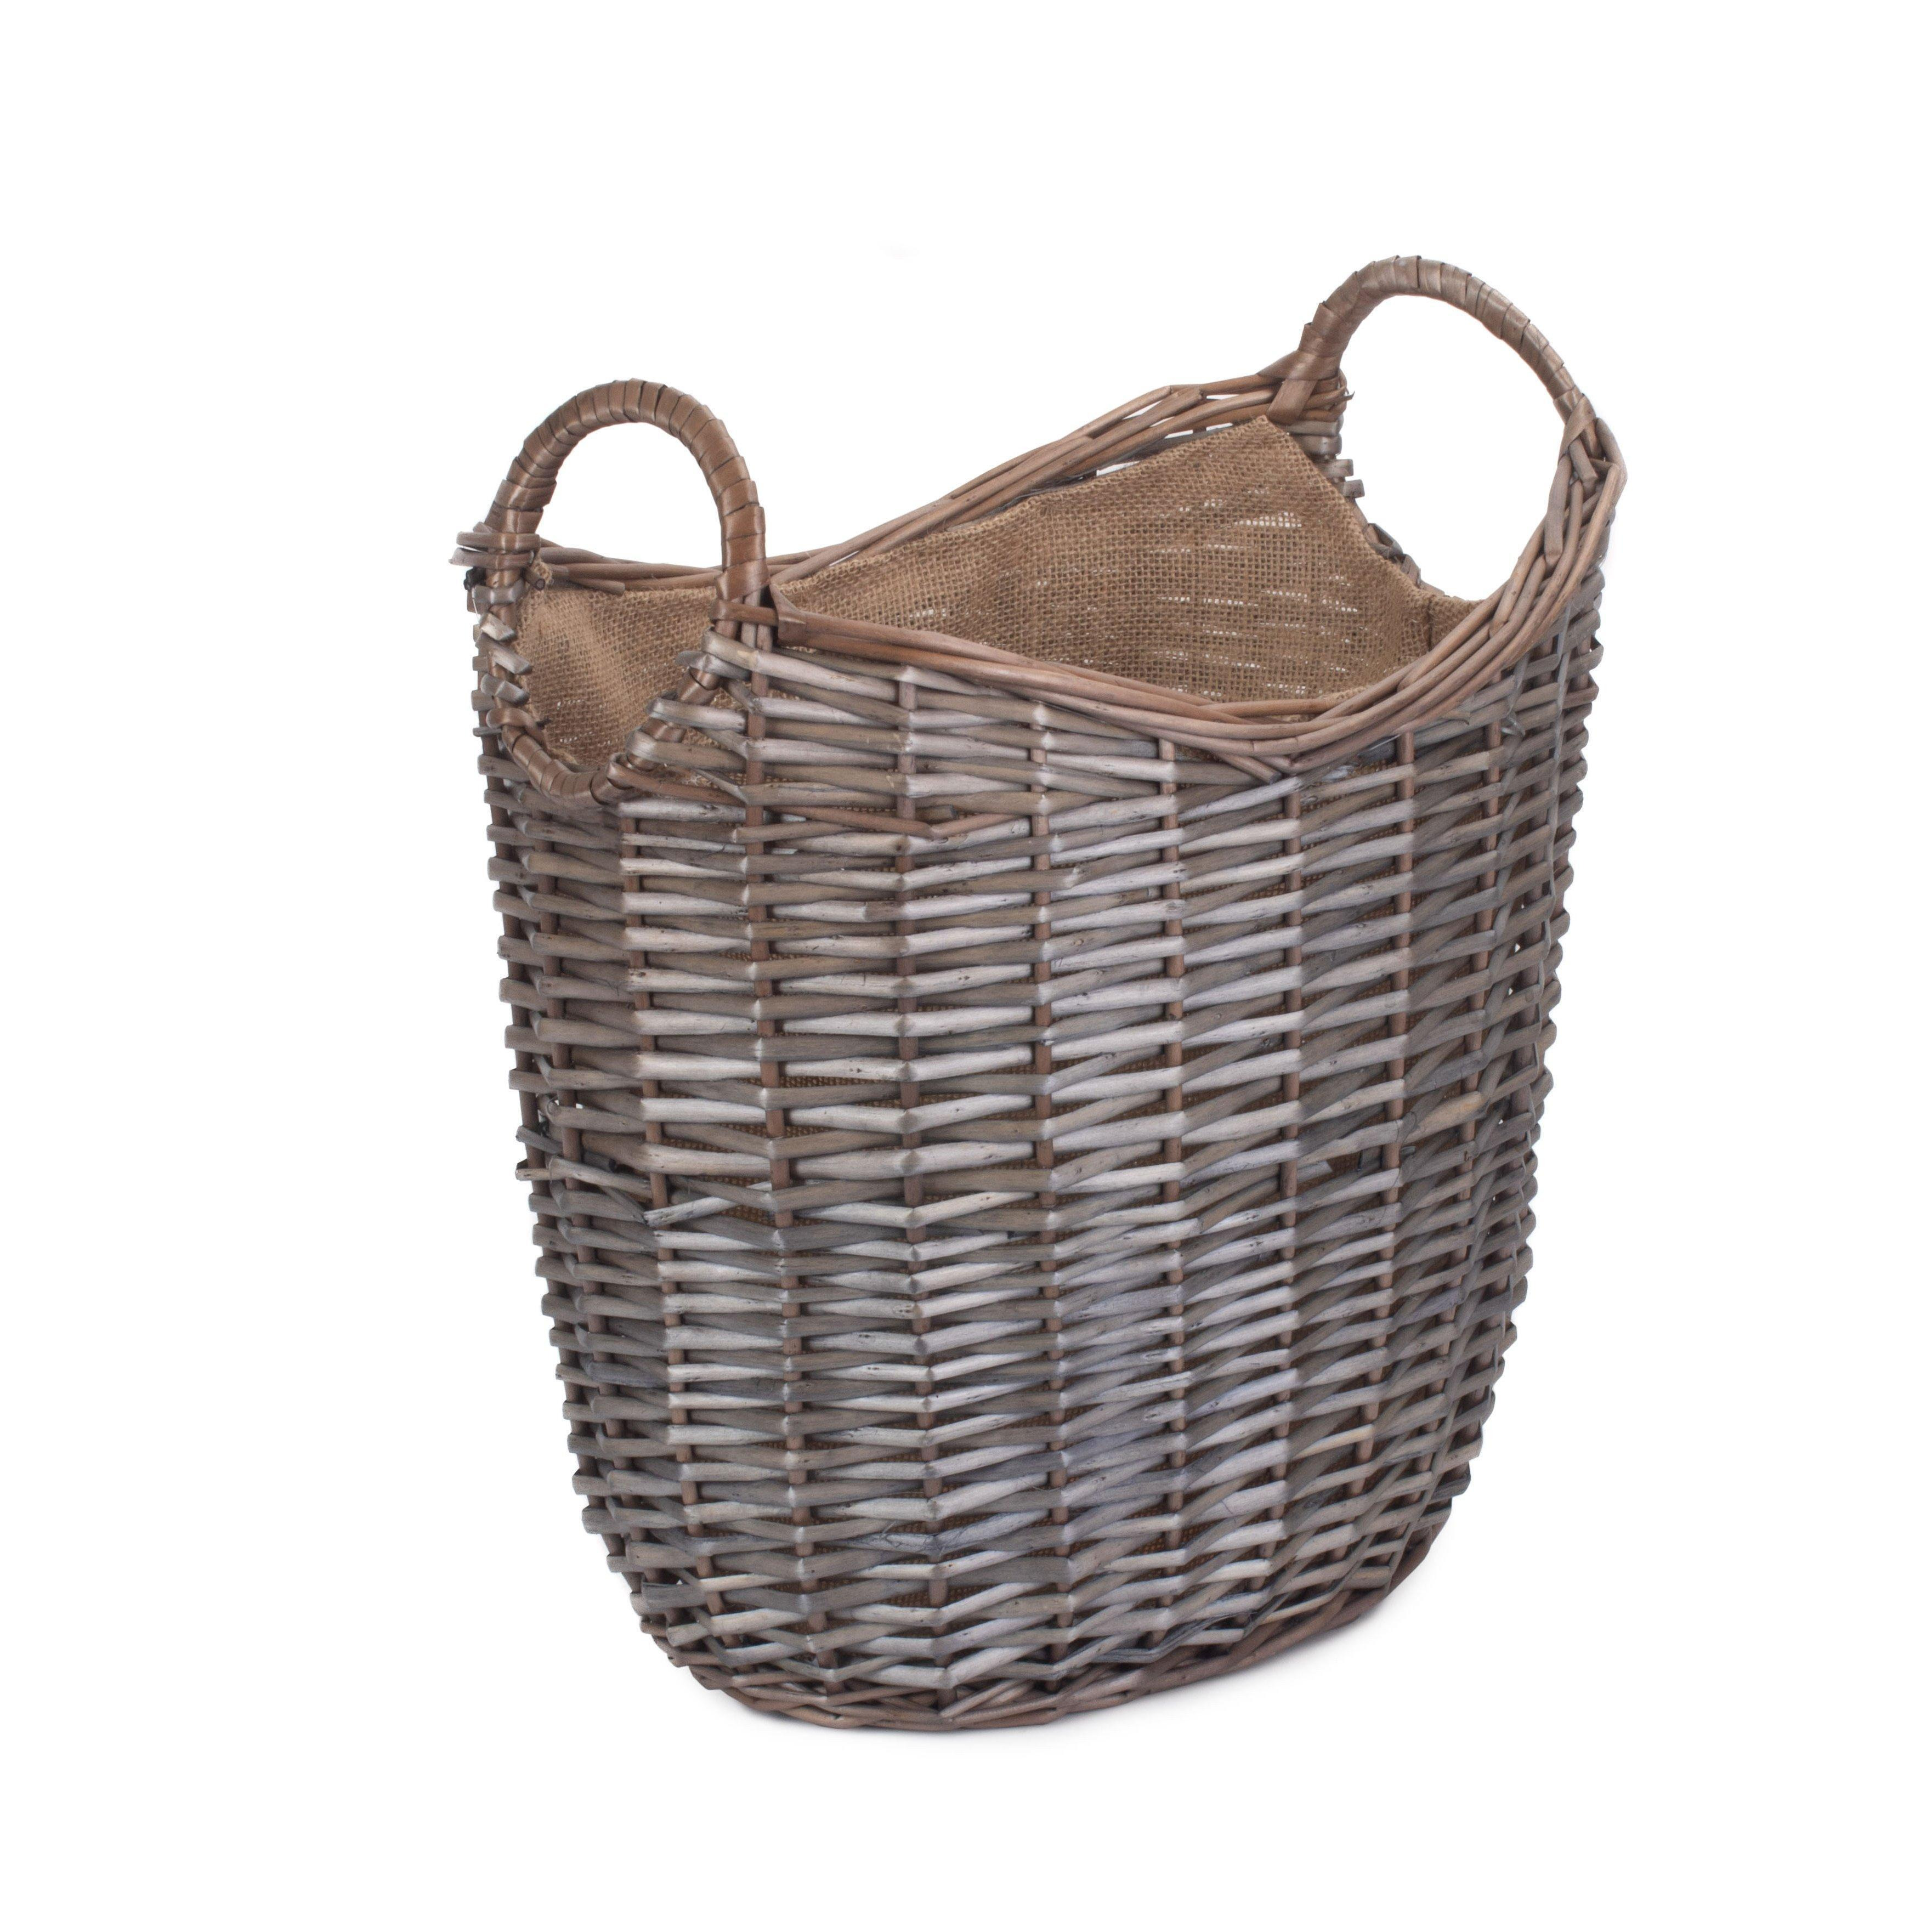 Wicker Scoop Neck Antique Wash Hessian Lined Log Basket - image 1